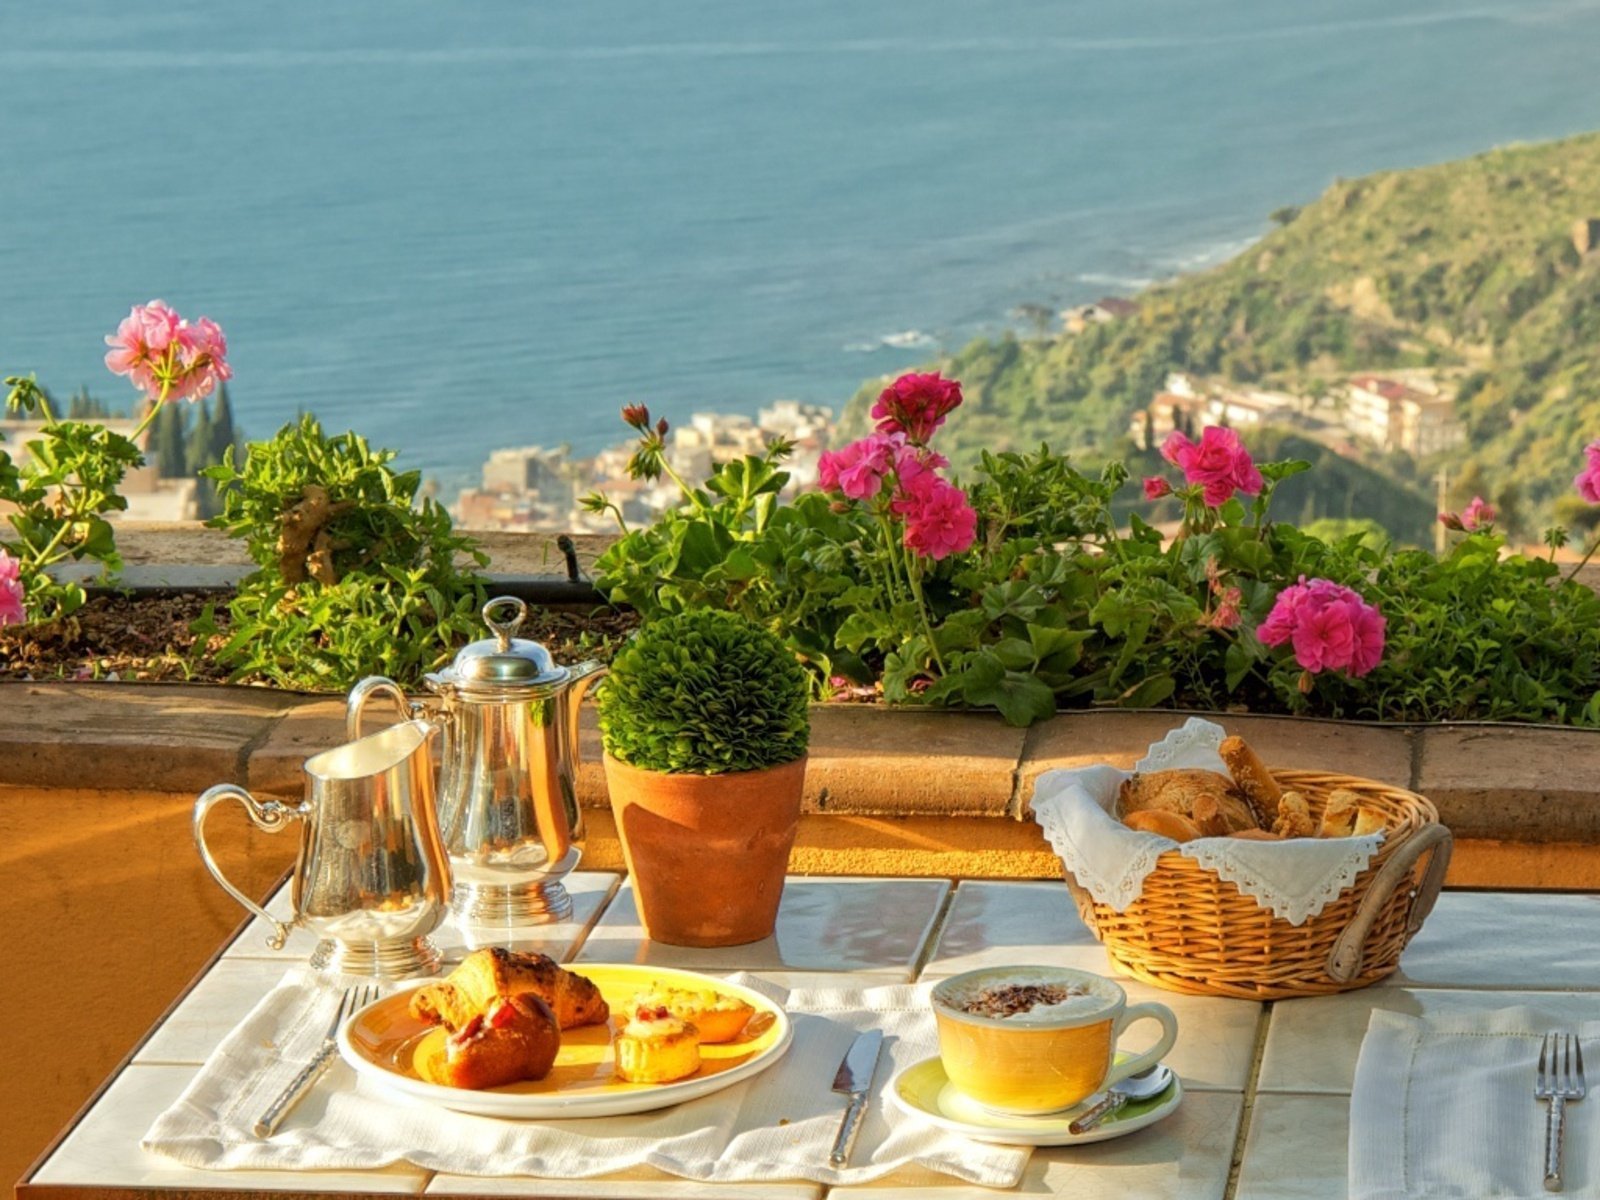 Изысканного утра. Завтрак цветы. Завтрак с цветами. Красивый завтрак. Терраса у моря.